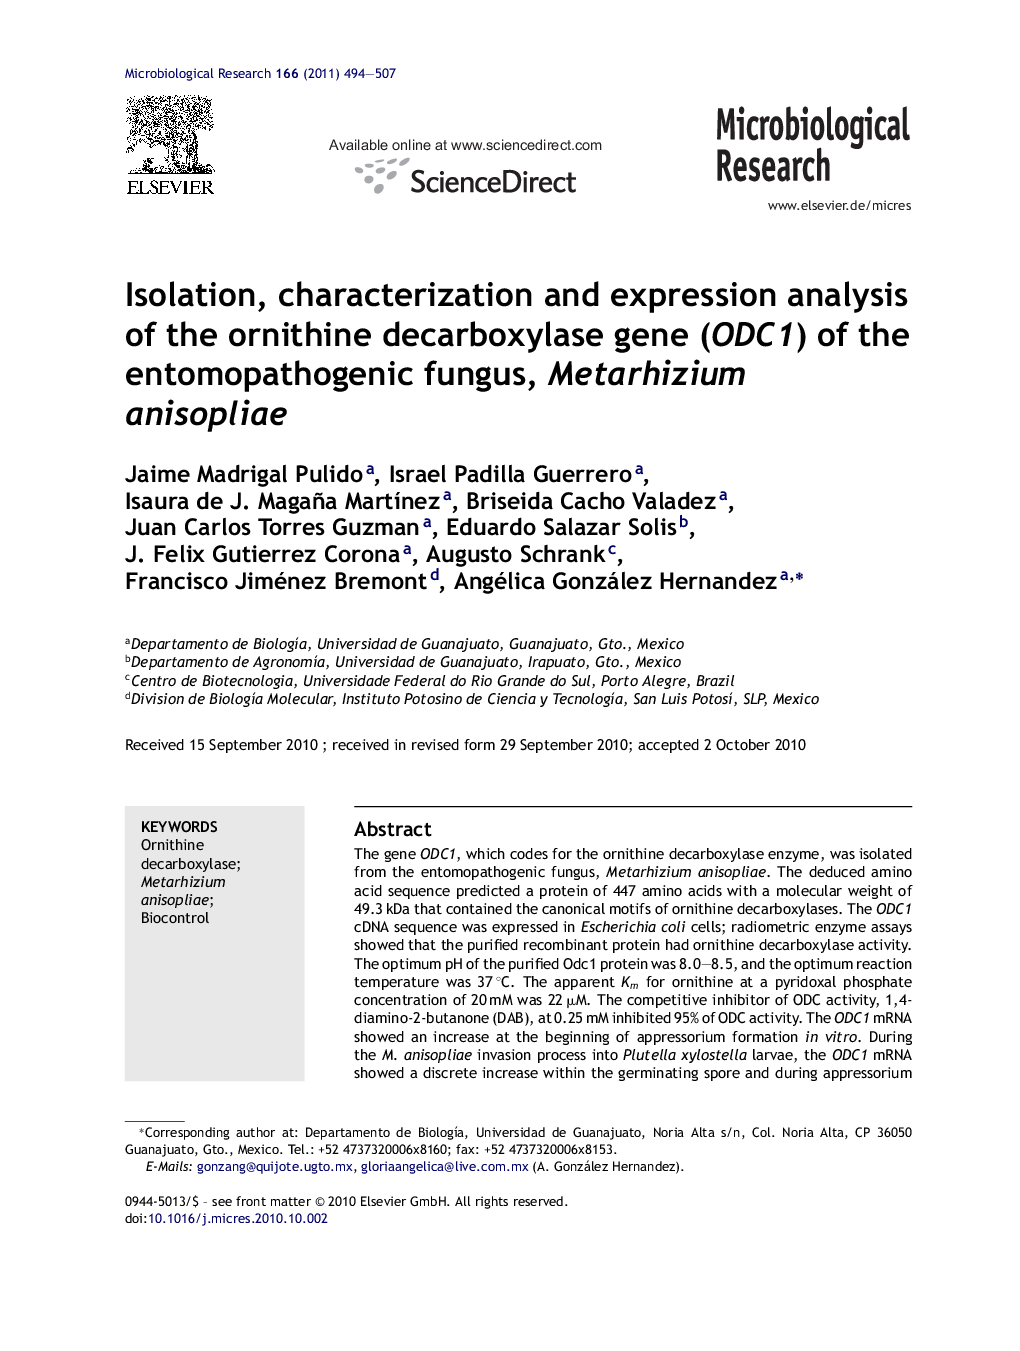 Isolation, characterization and expression analysis of the ornithine decarboxylase gene (ODC1) of the entomopathogenic fungus, Metarhizium anisopliae